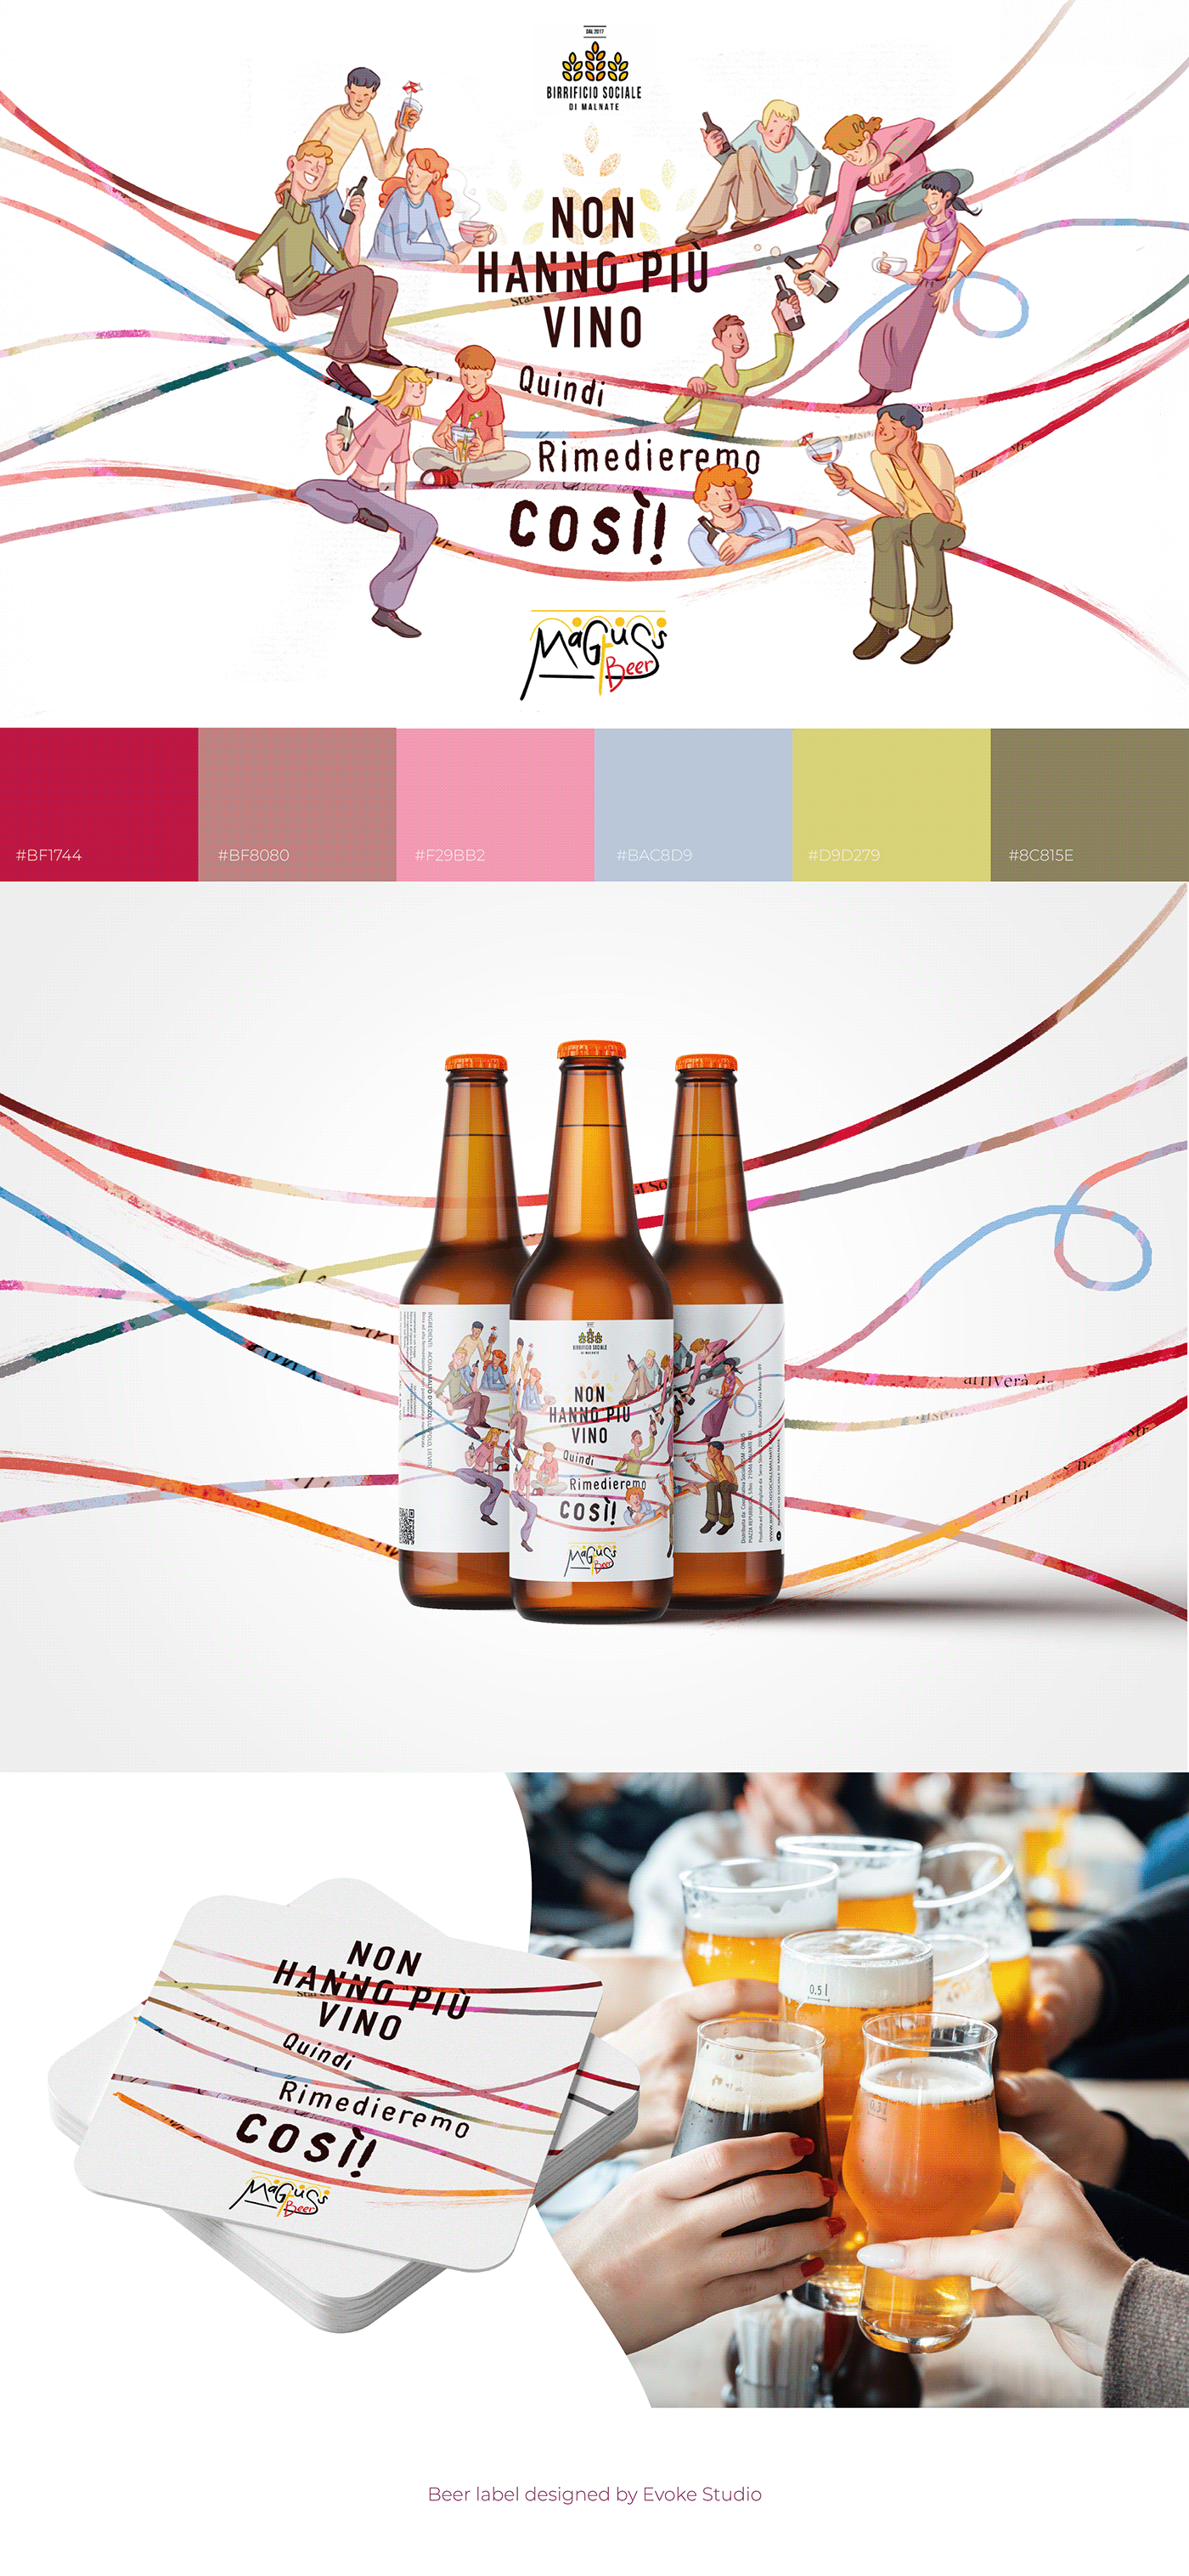 Packaging packaging design graphic design  ILLUSTRATION  beer label